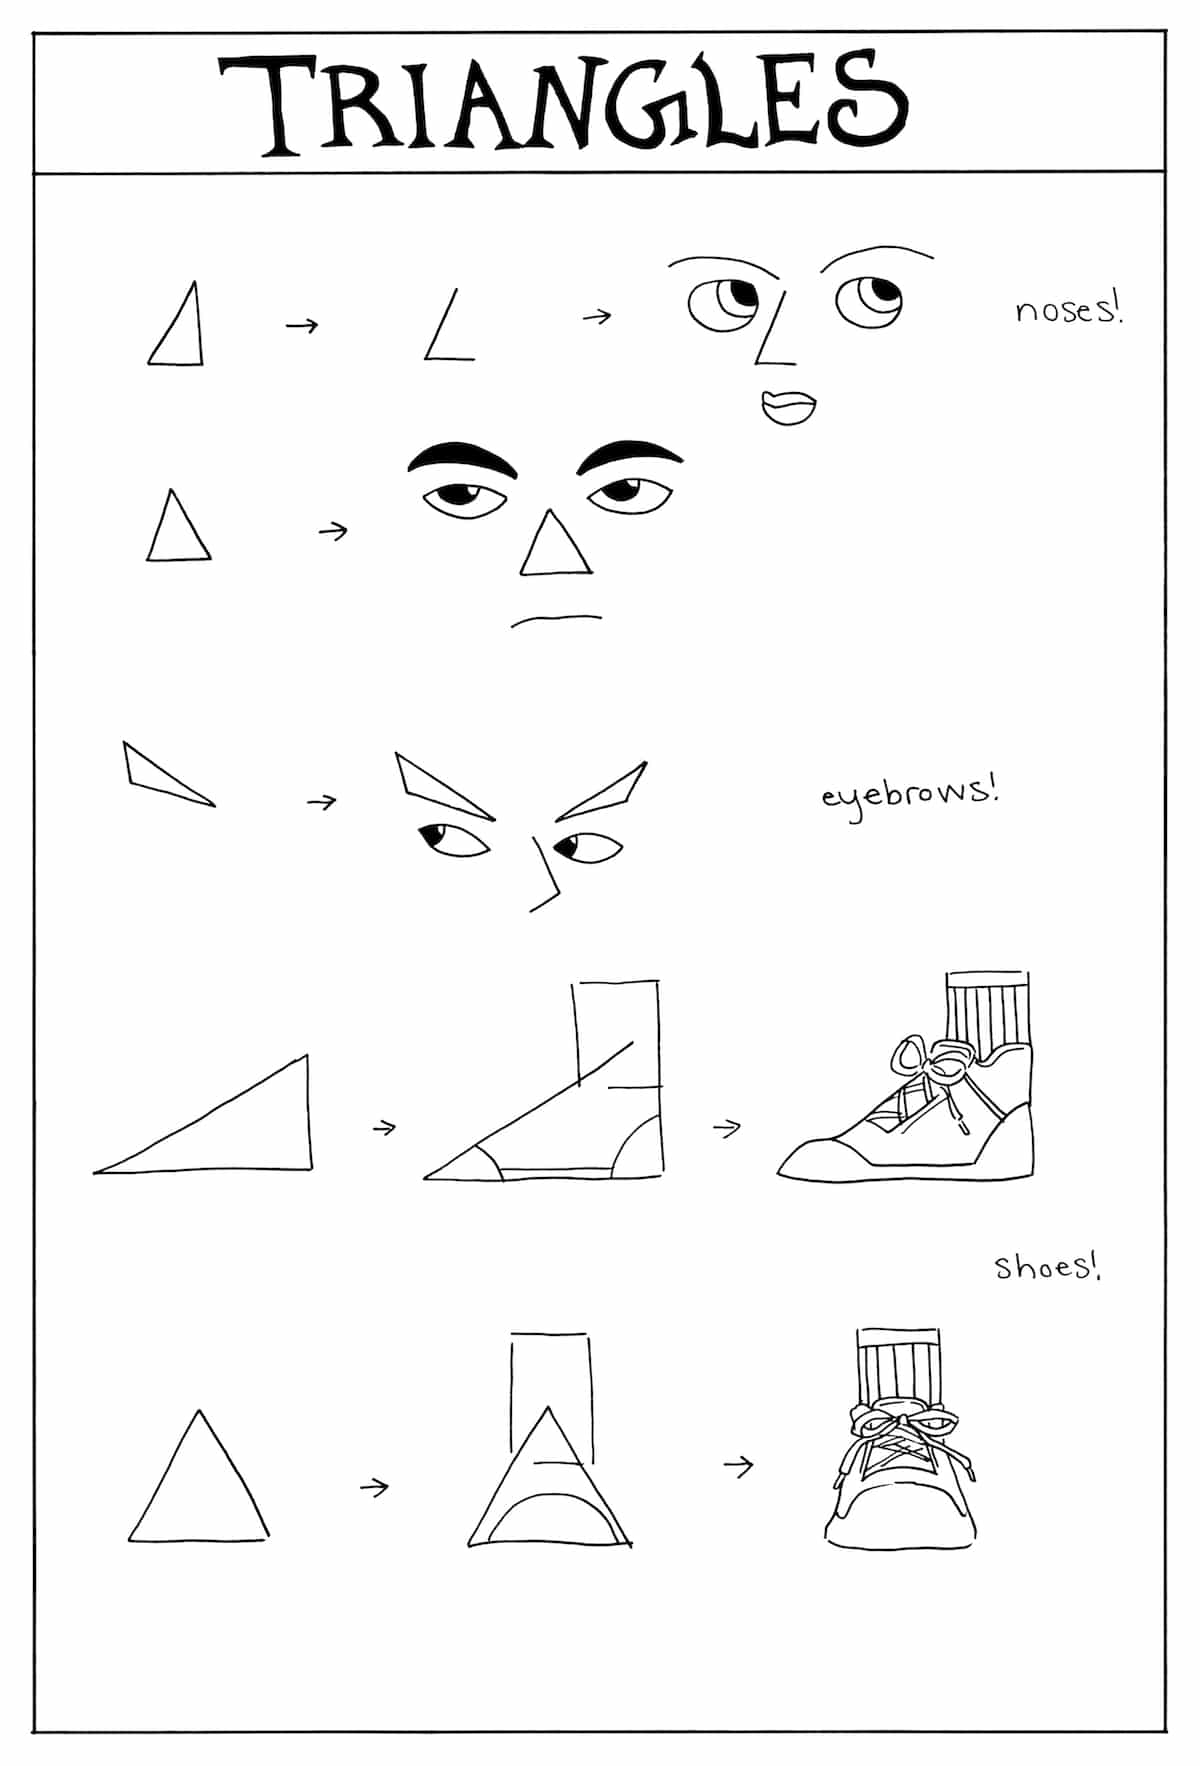 cómo dibujar personas y caricaturas con triángulos